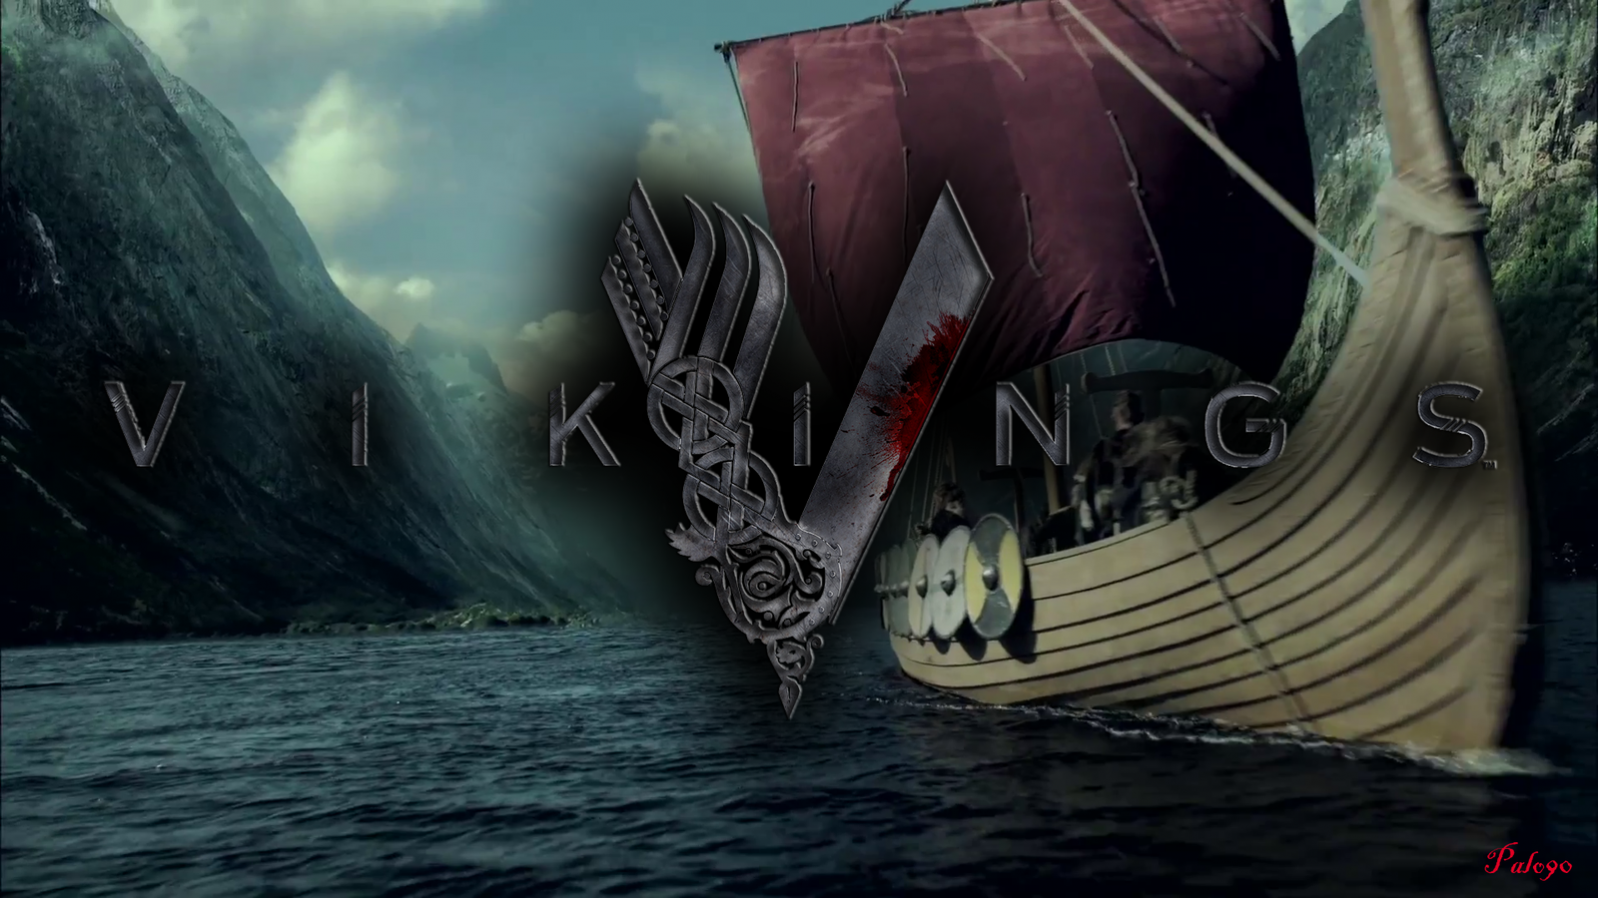 vikingos fondo de pantalla hd,cg artwork,ilustración,diseño gráfico,ficción,barco fantasma